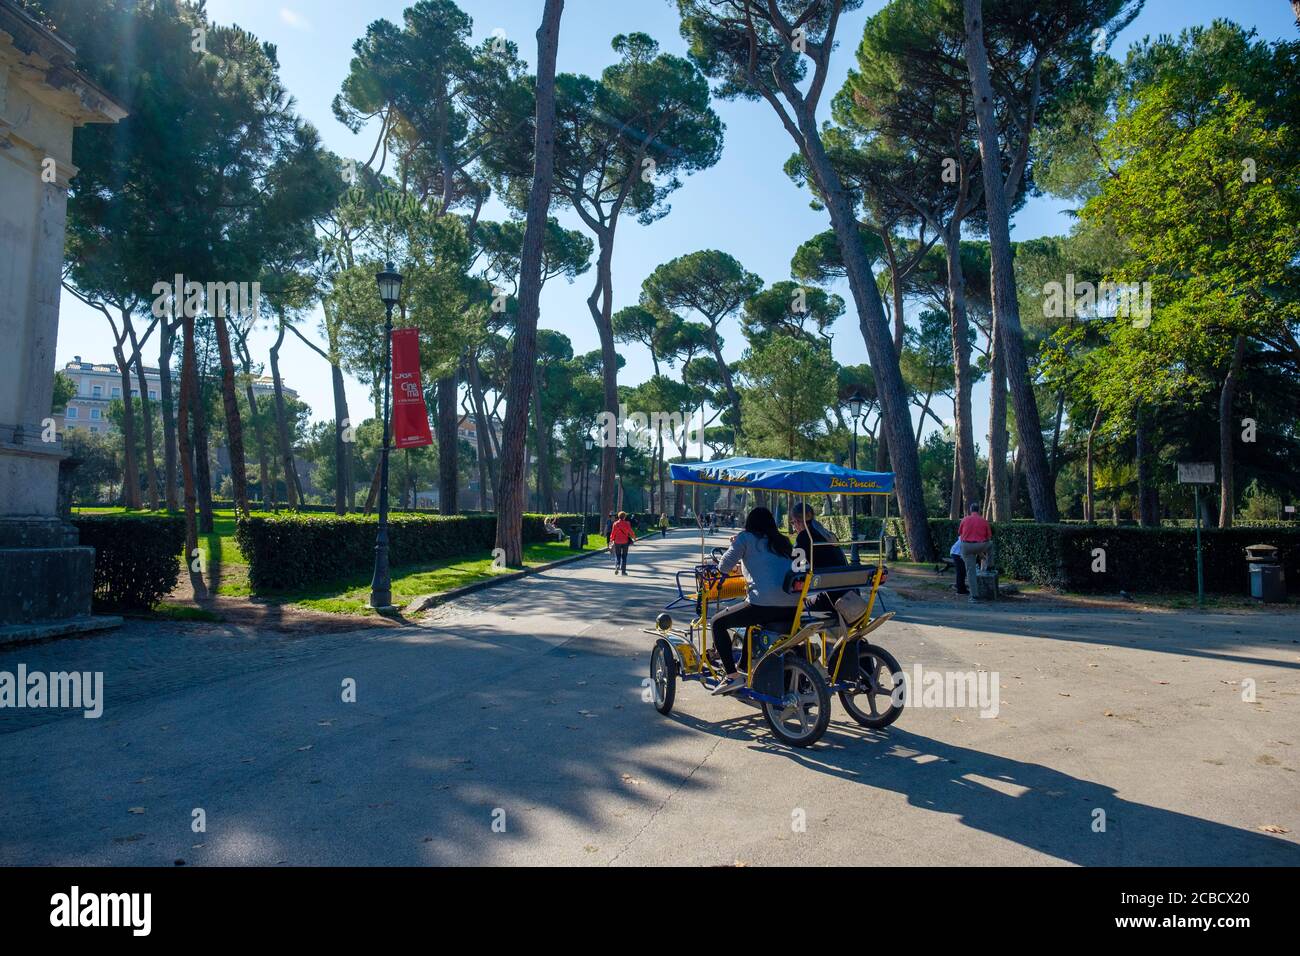 Persone che si godono una giornata estiva a cavallo di un Bici Pincio Rent a Bike Rental quadricycle, Villa Borghese Park, Roma, Italia Foto Stock